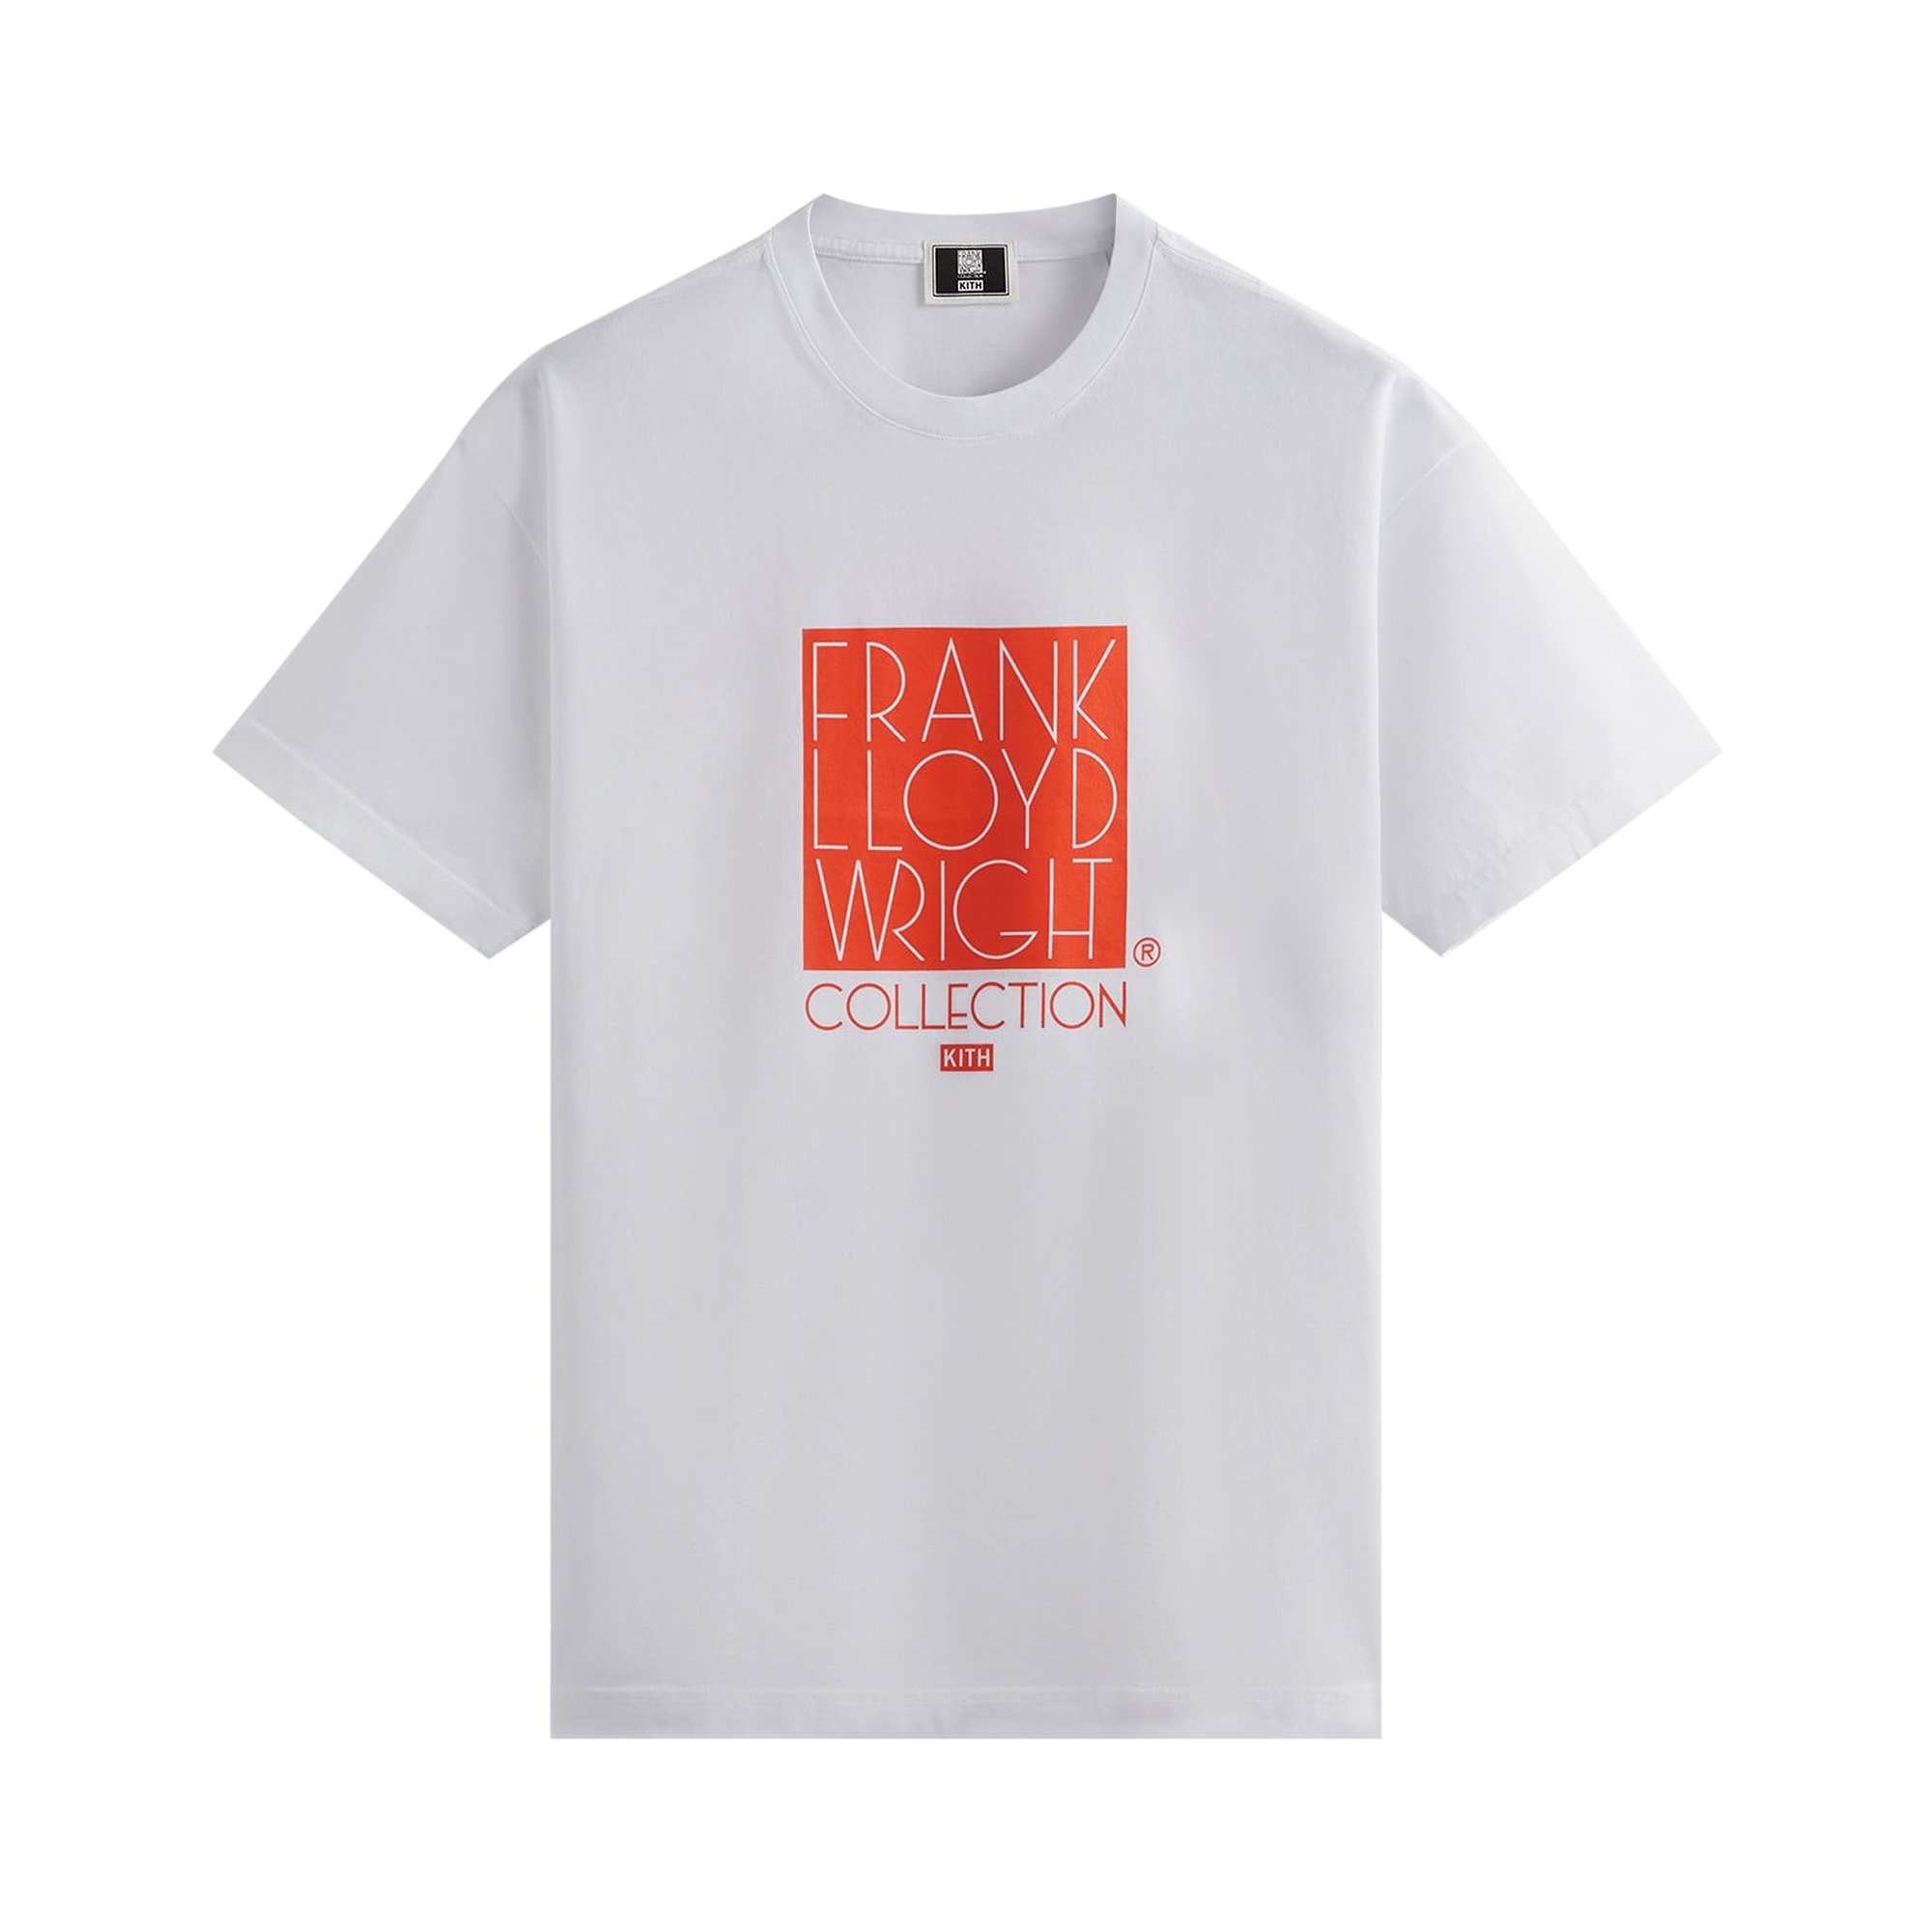 brooks pfeiffer bruce frank lloyd wright Белая футболка с логотипом Kith For Frank Lloyd Wright Foundation